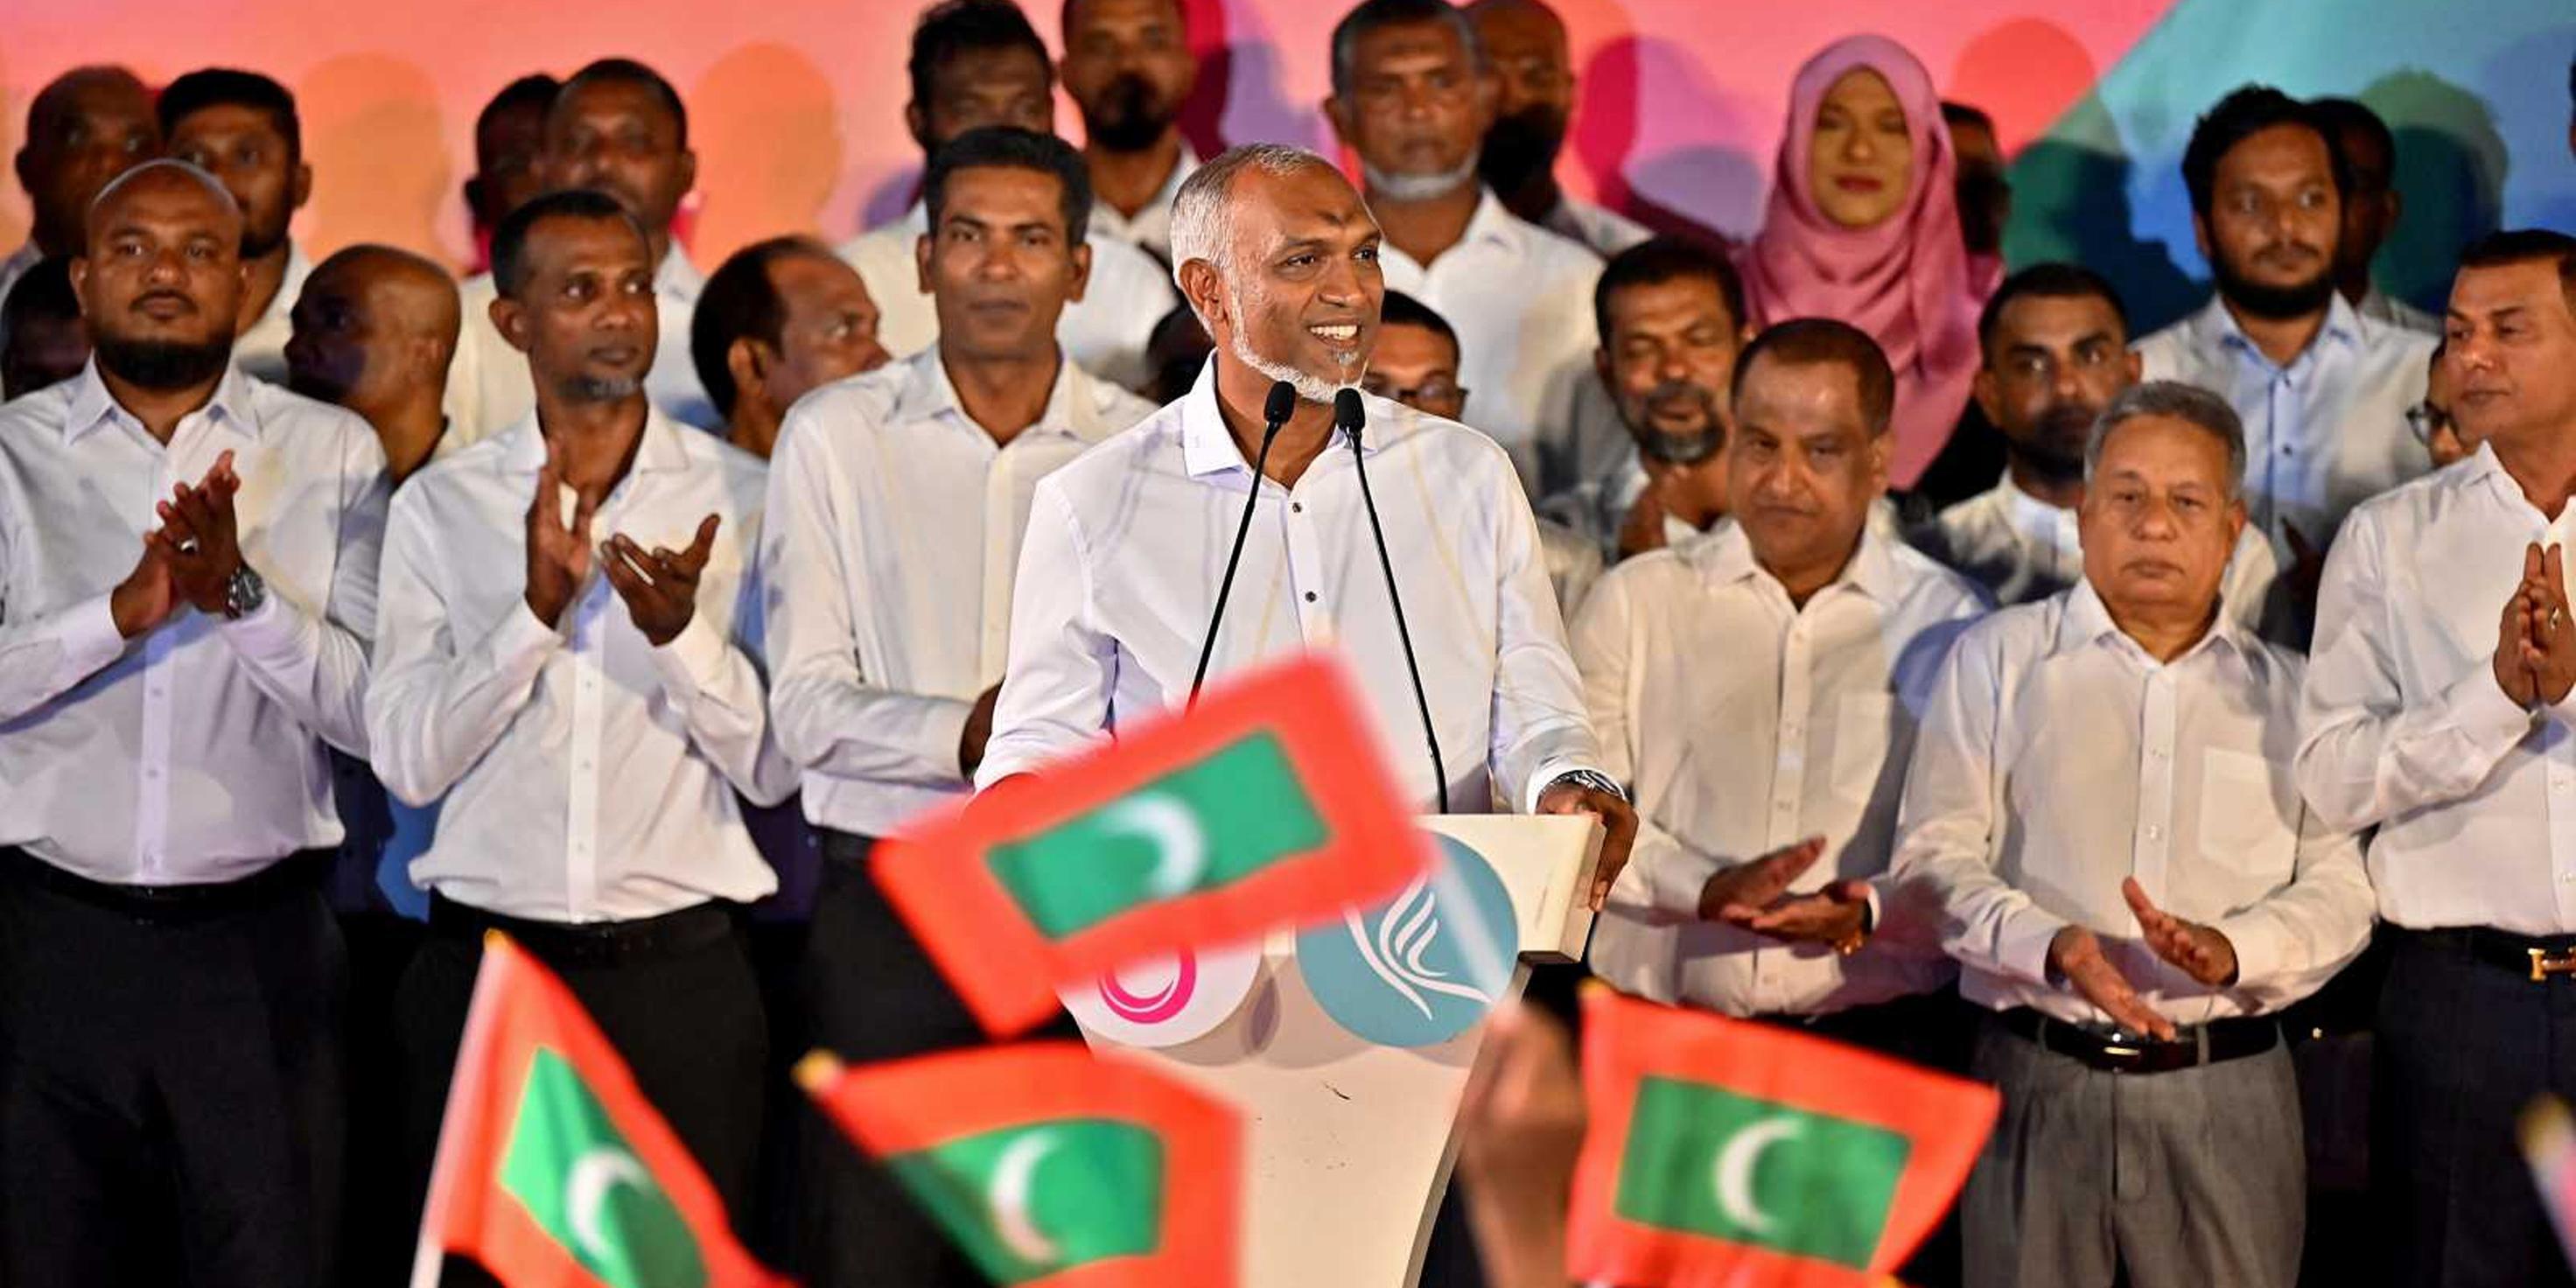 التداعيات المحتملة لنتائج الانتخابات التشريعية في جزر المالديف